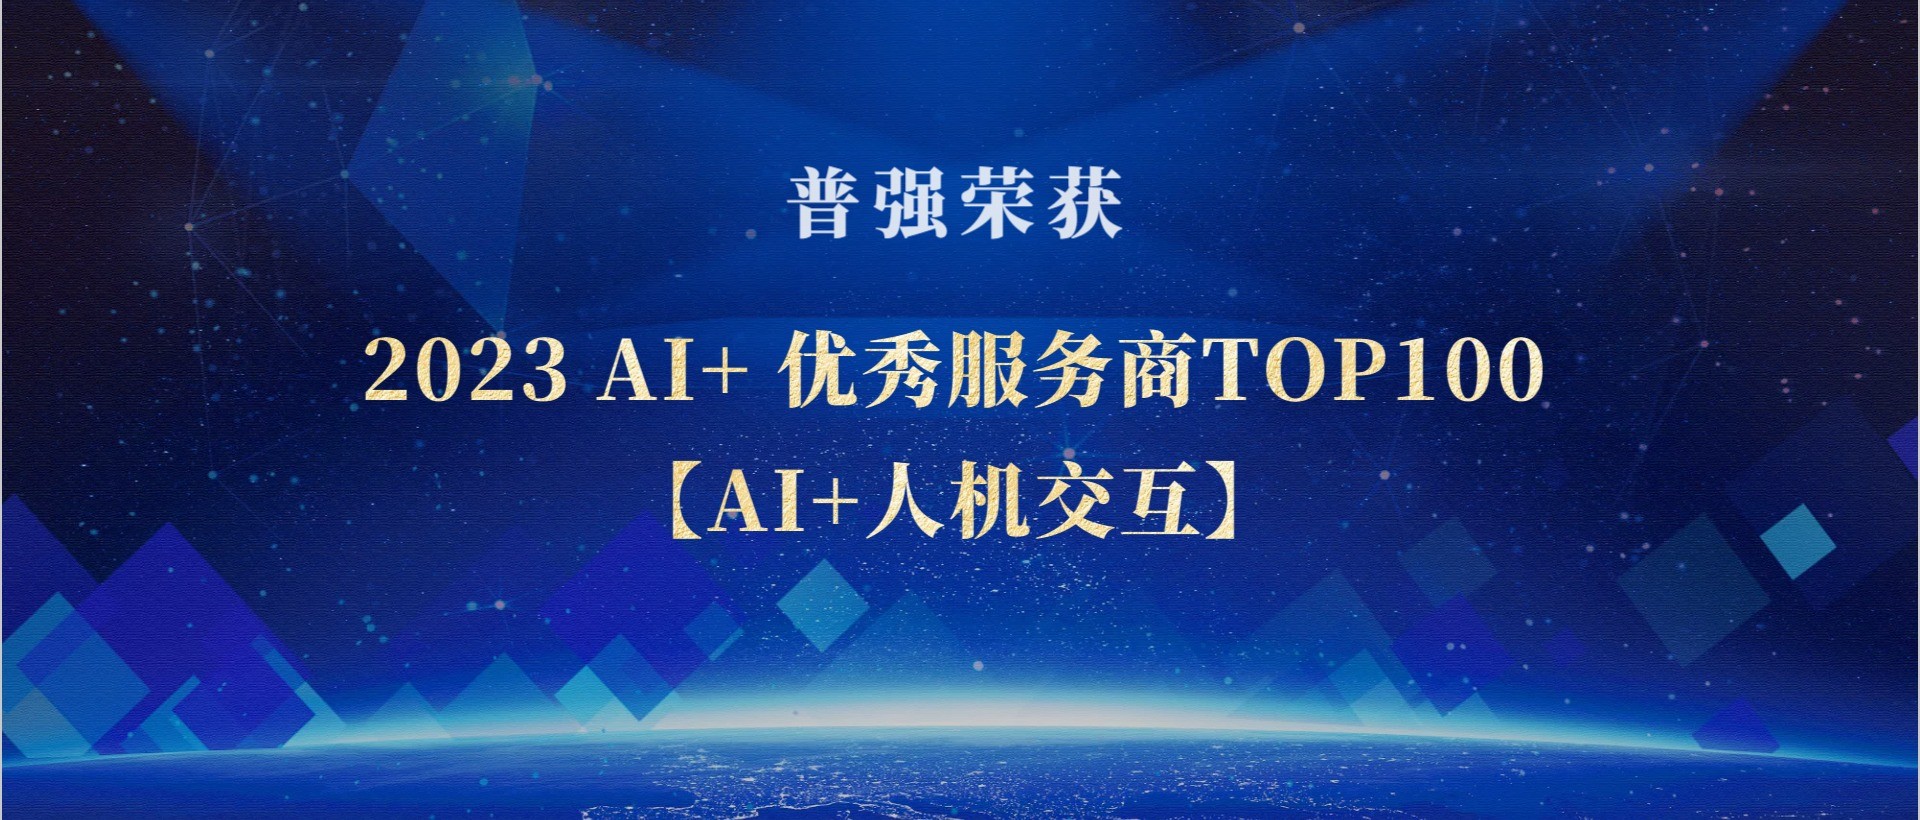 普强荣获“2023 AI+ 优秀服务商TOP100【AI+人机交互】”